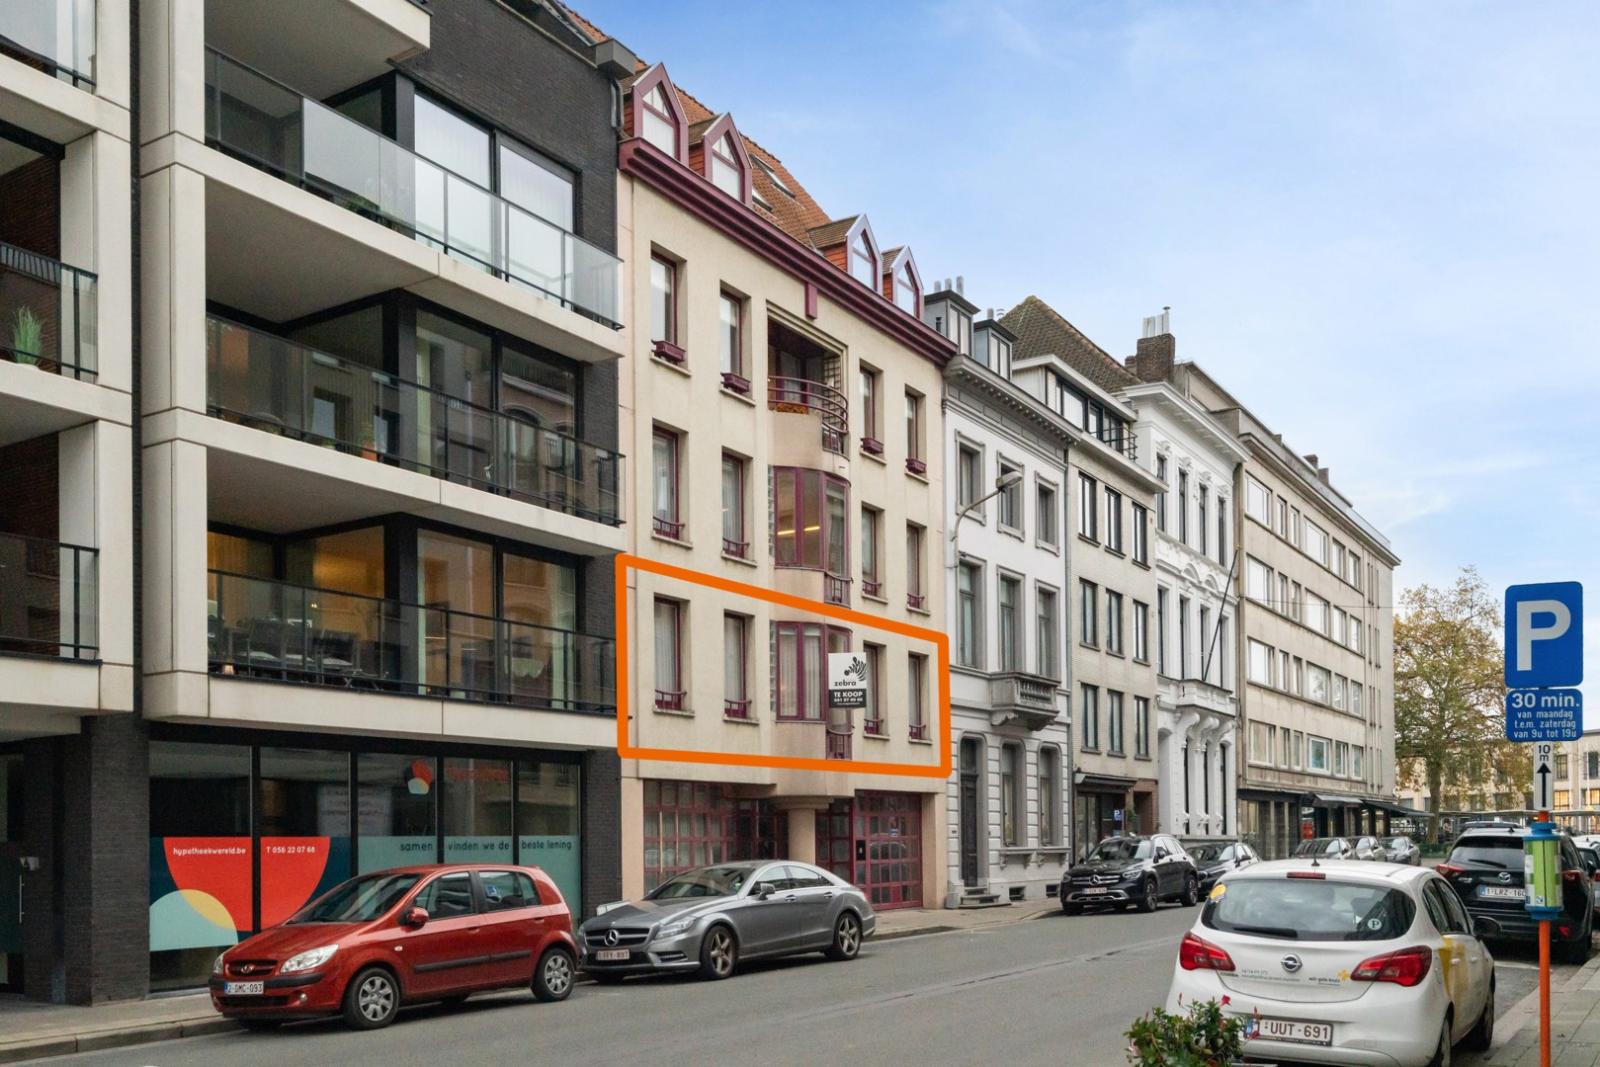 Instapklaar 3-slaapkamer appartement met terras en garage te centrum Kortrijk!